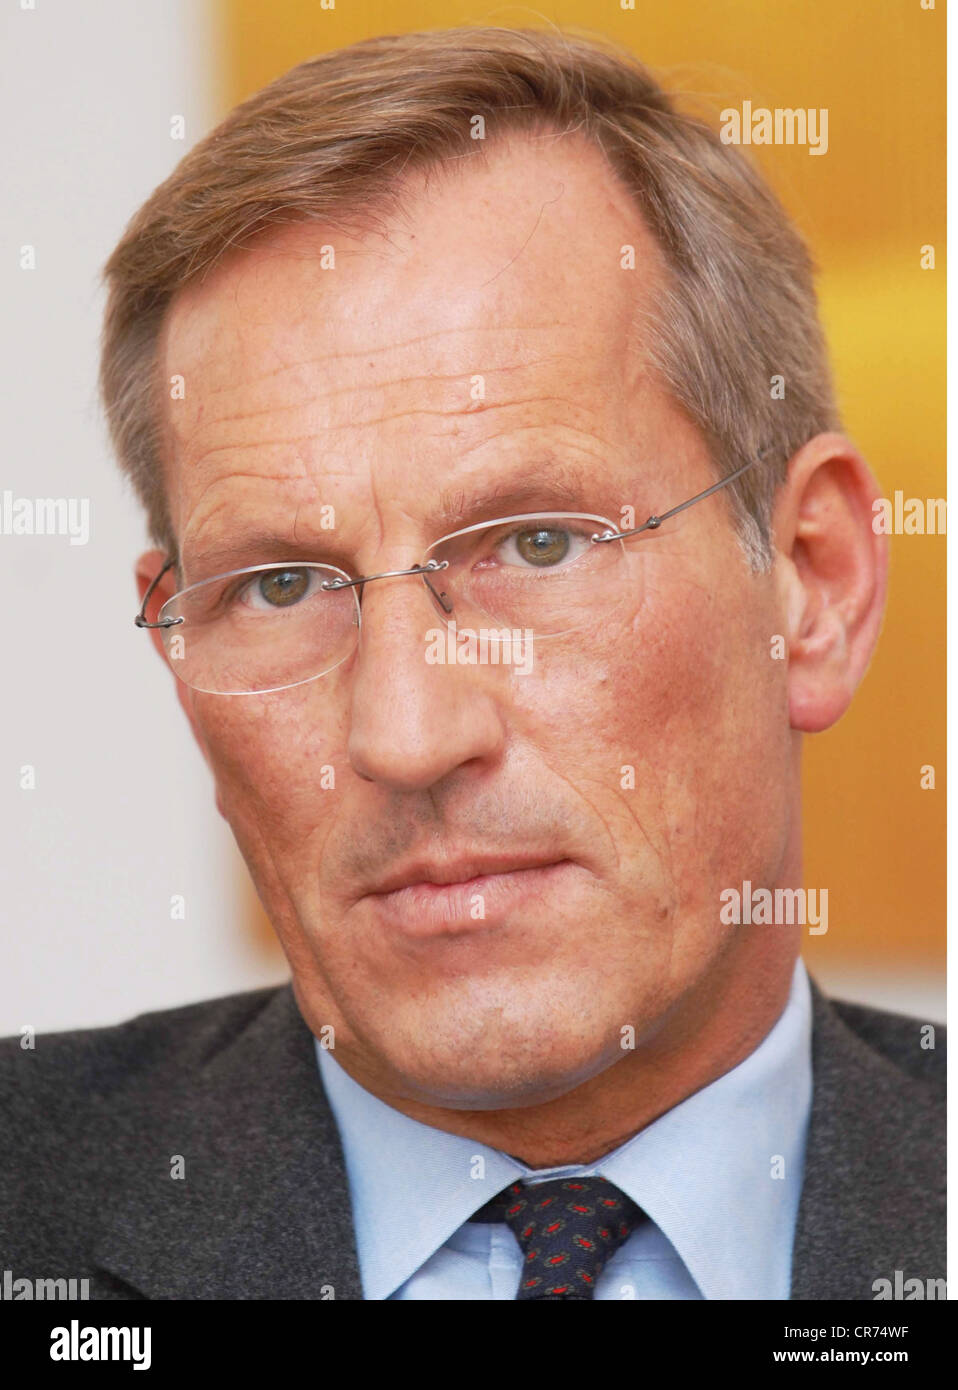 Diekmann, Michael, * 23.12.1954, homme d'affaires allemand, Allianz Chief Executive Officer, portrait, pendant l'interview, Munich, 20.12.2006, Banque D'Images